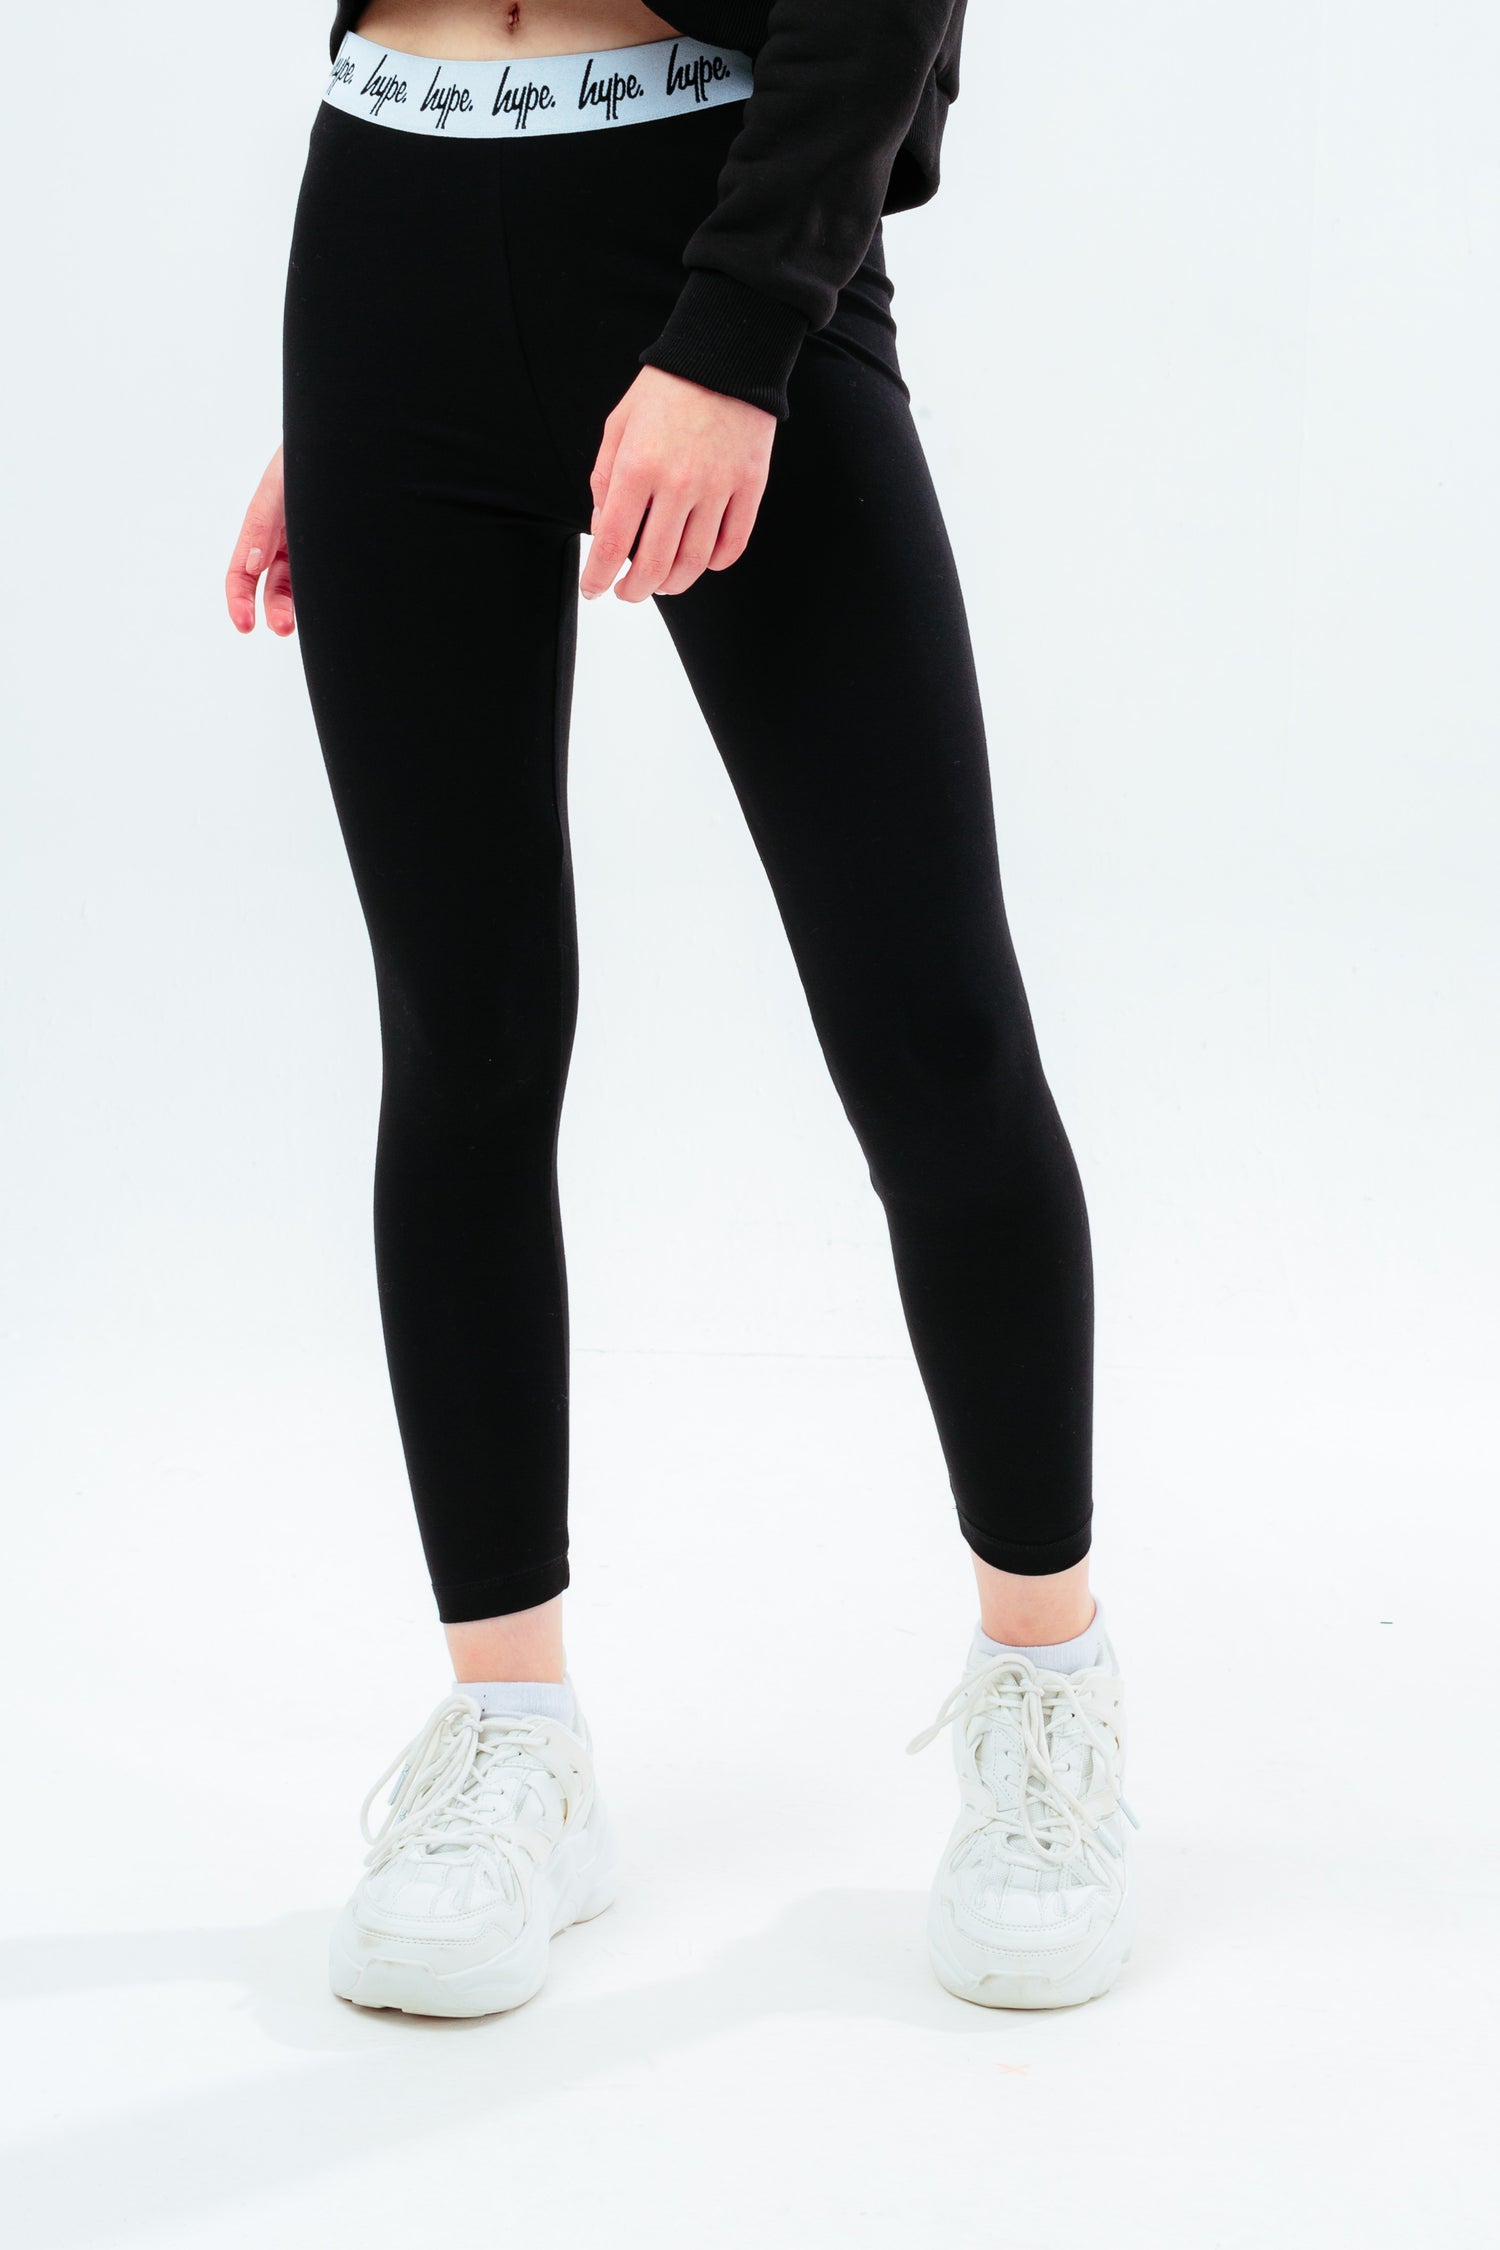 Topshop Black Long Leggings - 2  Long leggings, Topshop, Leggings